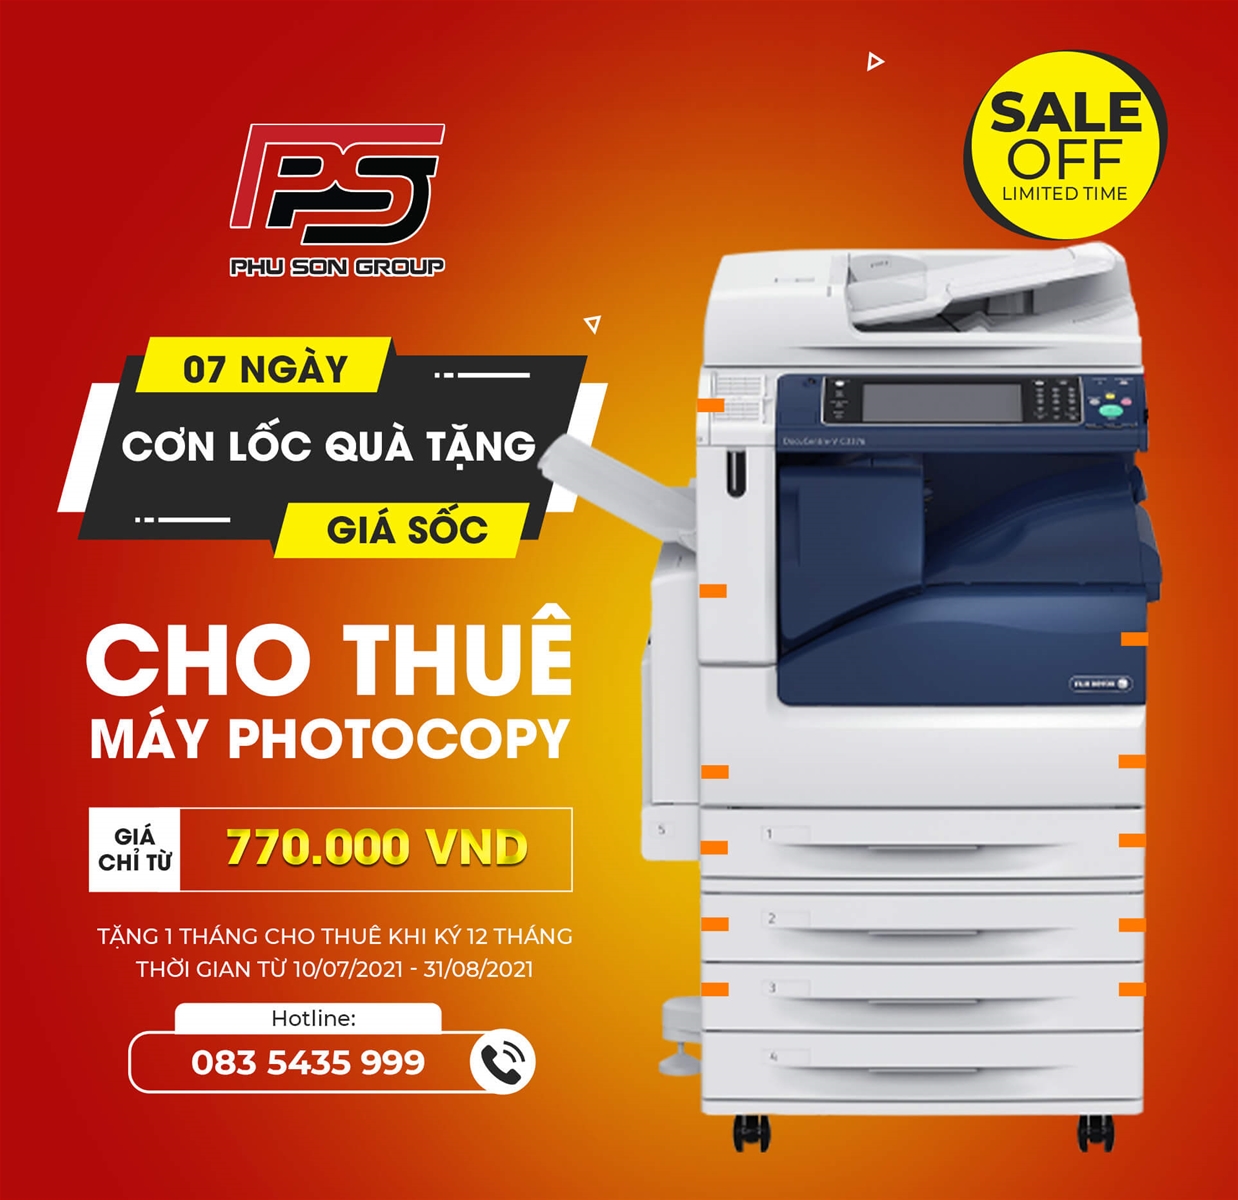 Khuyến mại cho thuê máy photocopy 2021